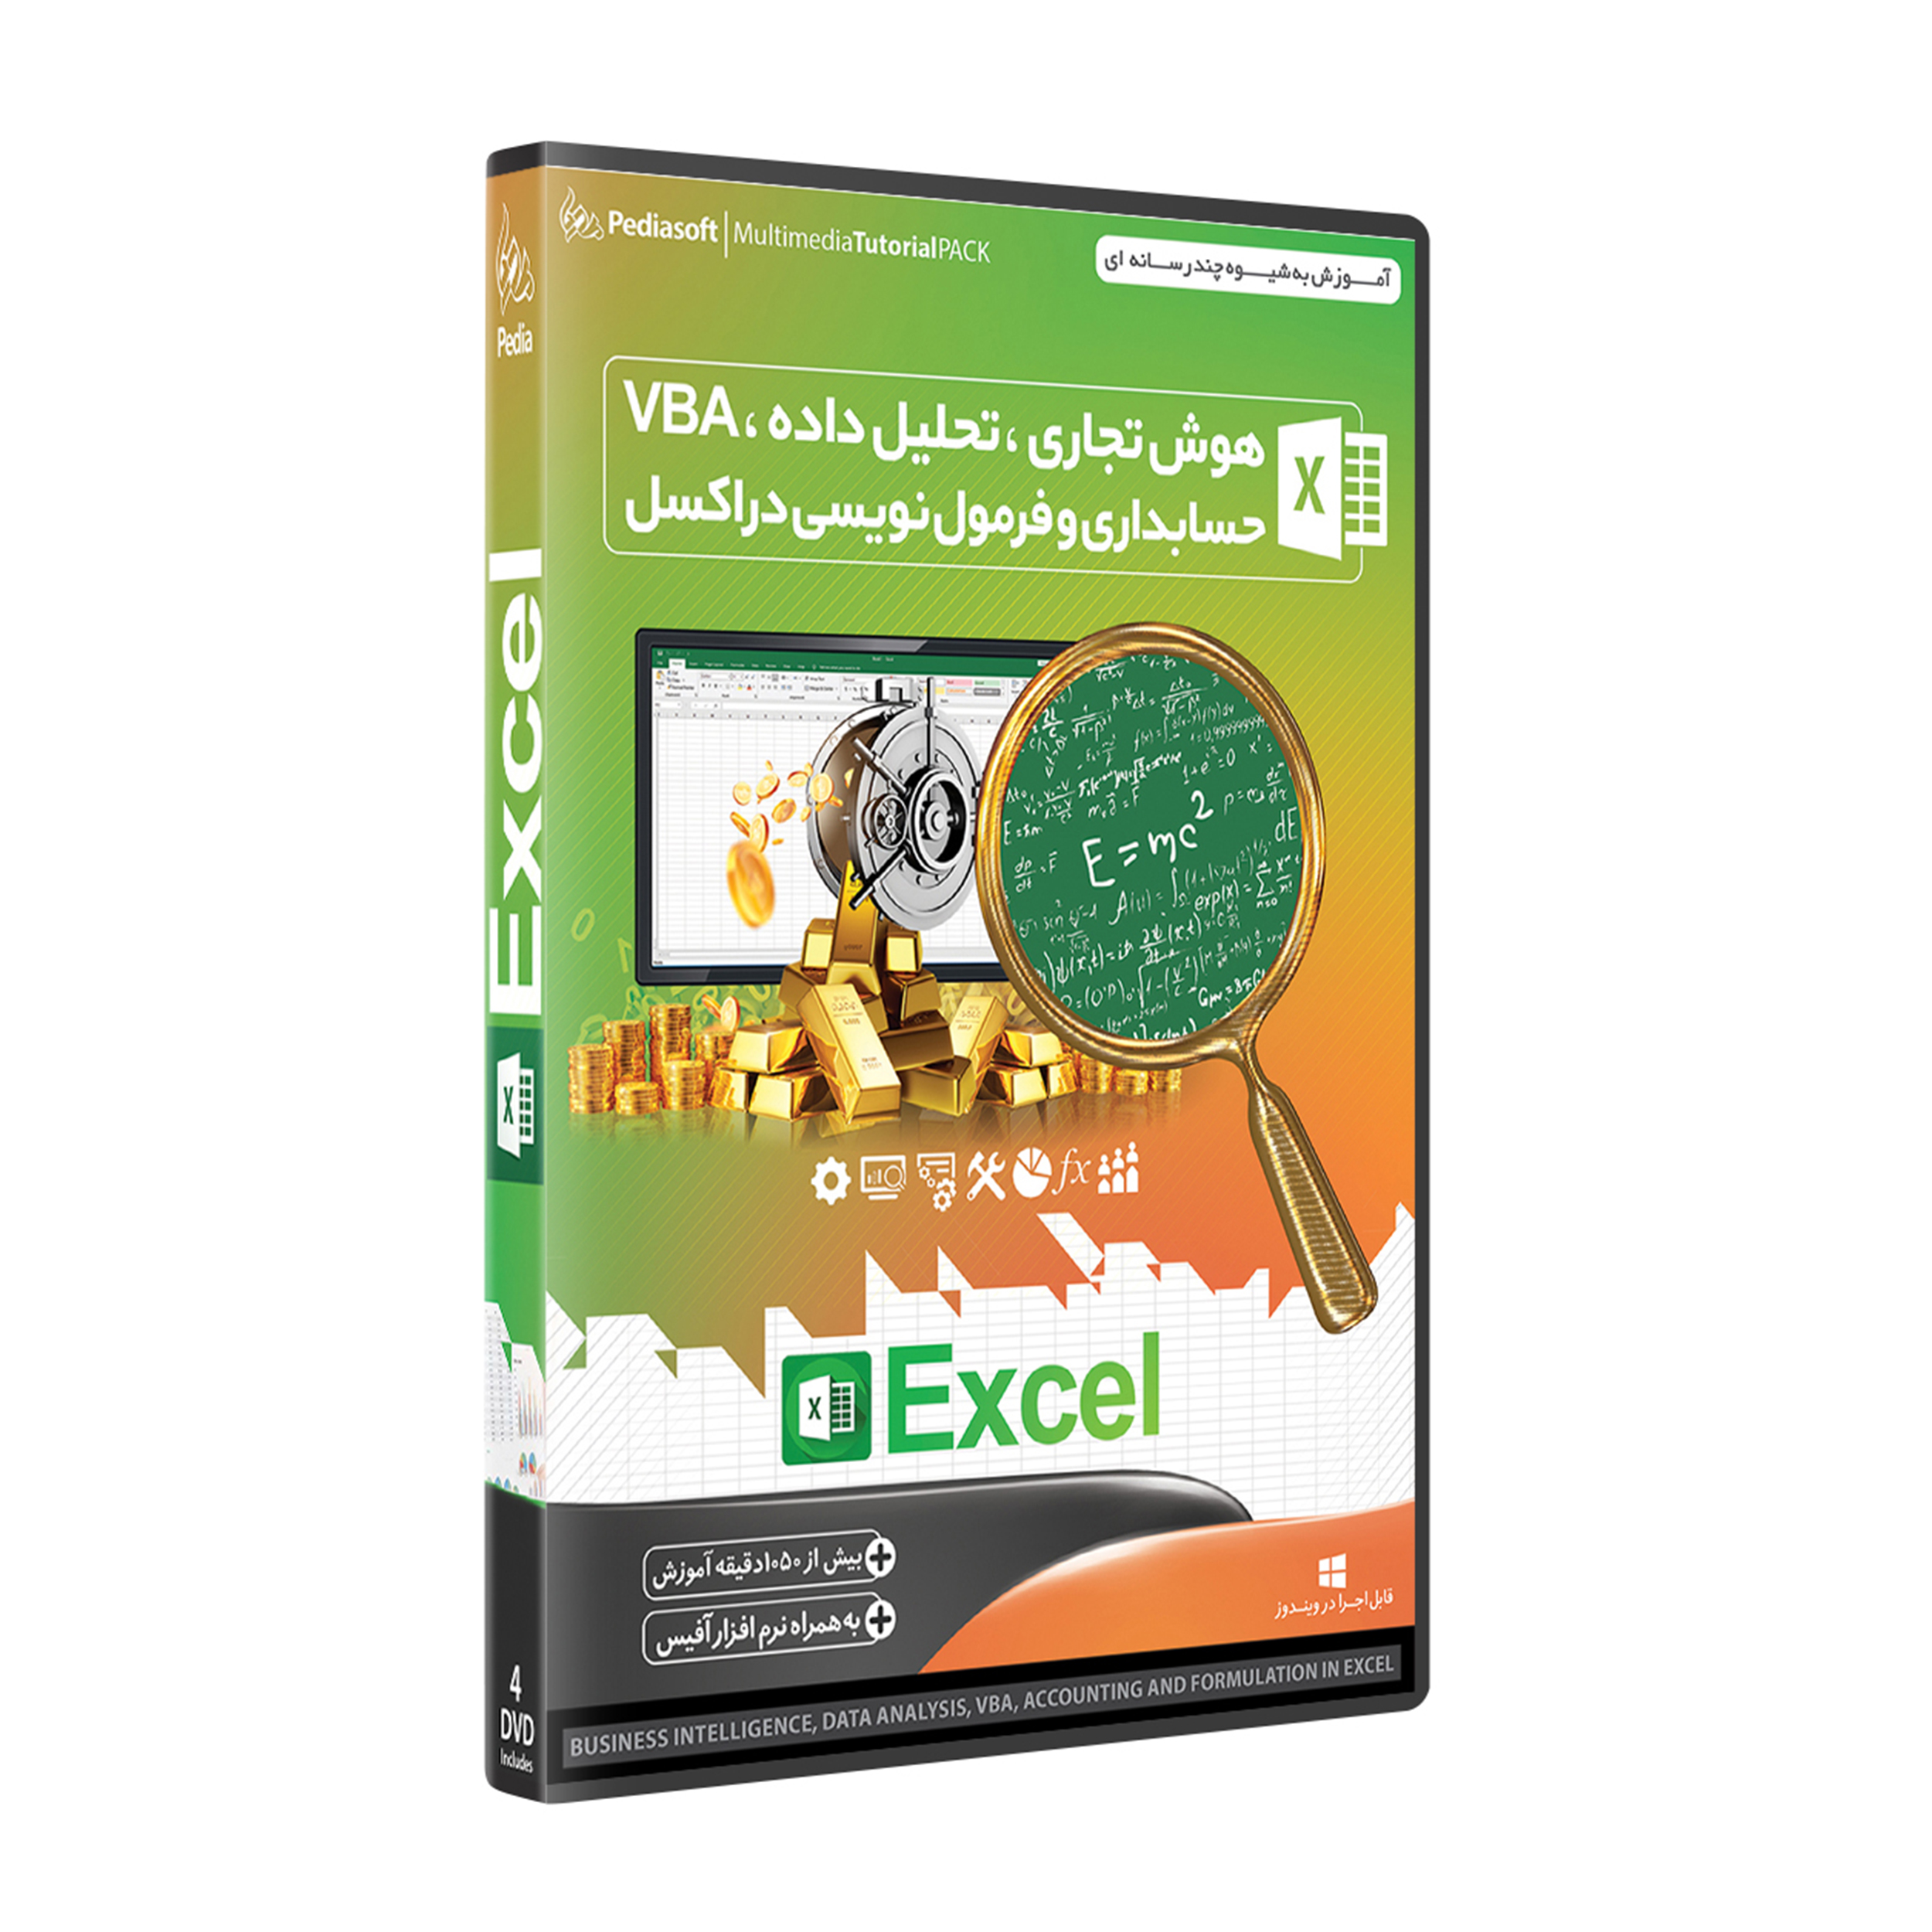 نرم افزار آموزش هوش تجاری ، تحلیل داده ، VBA ، حسابداری و فرمول نویسی در اکسل EXCEL + اکسل مقدماتی نشر پدیا سافت